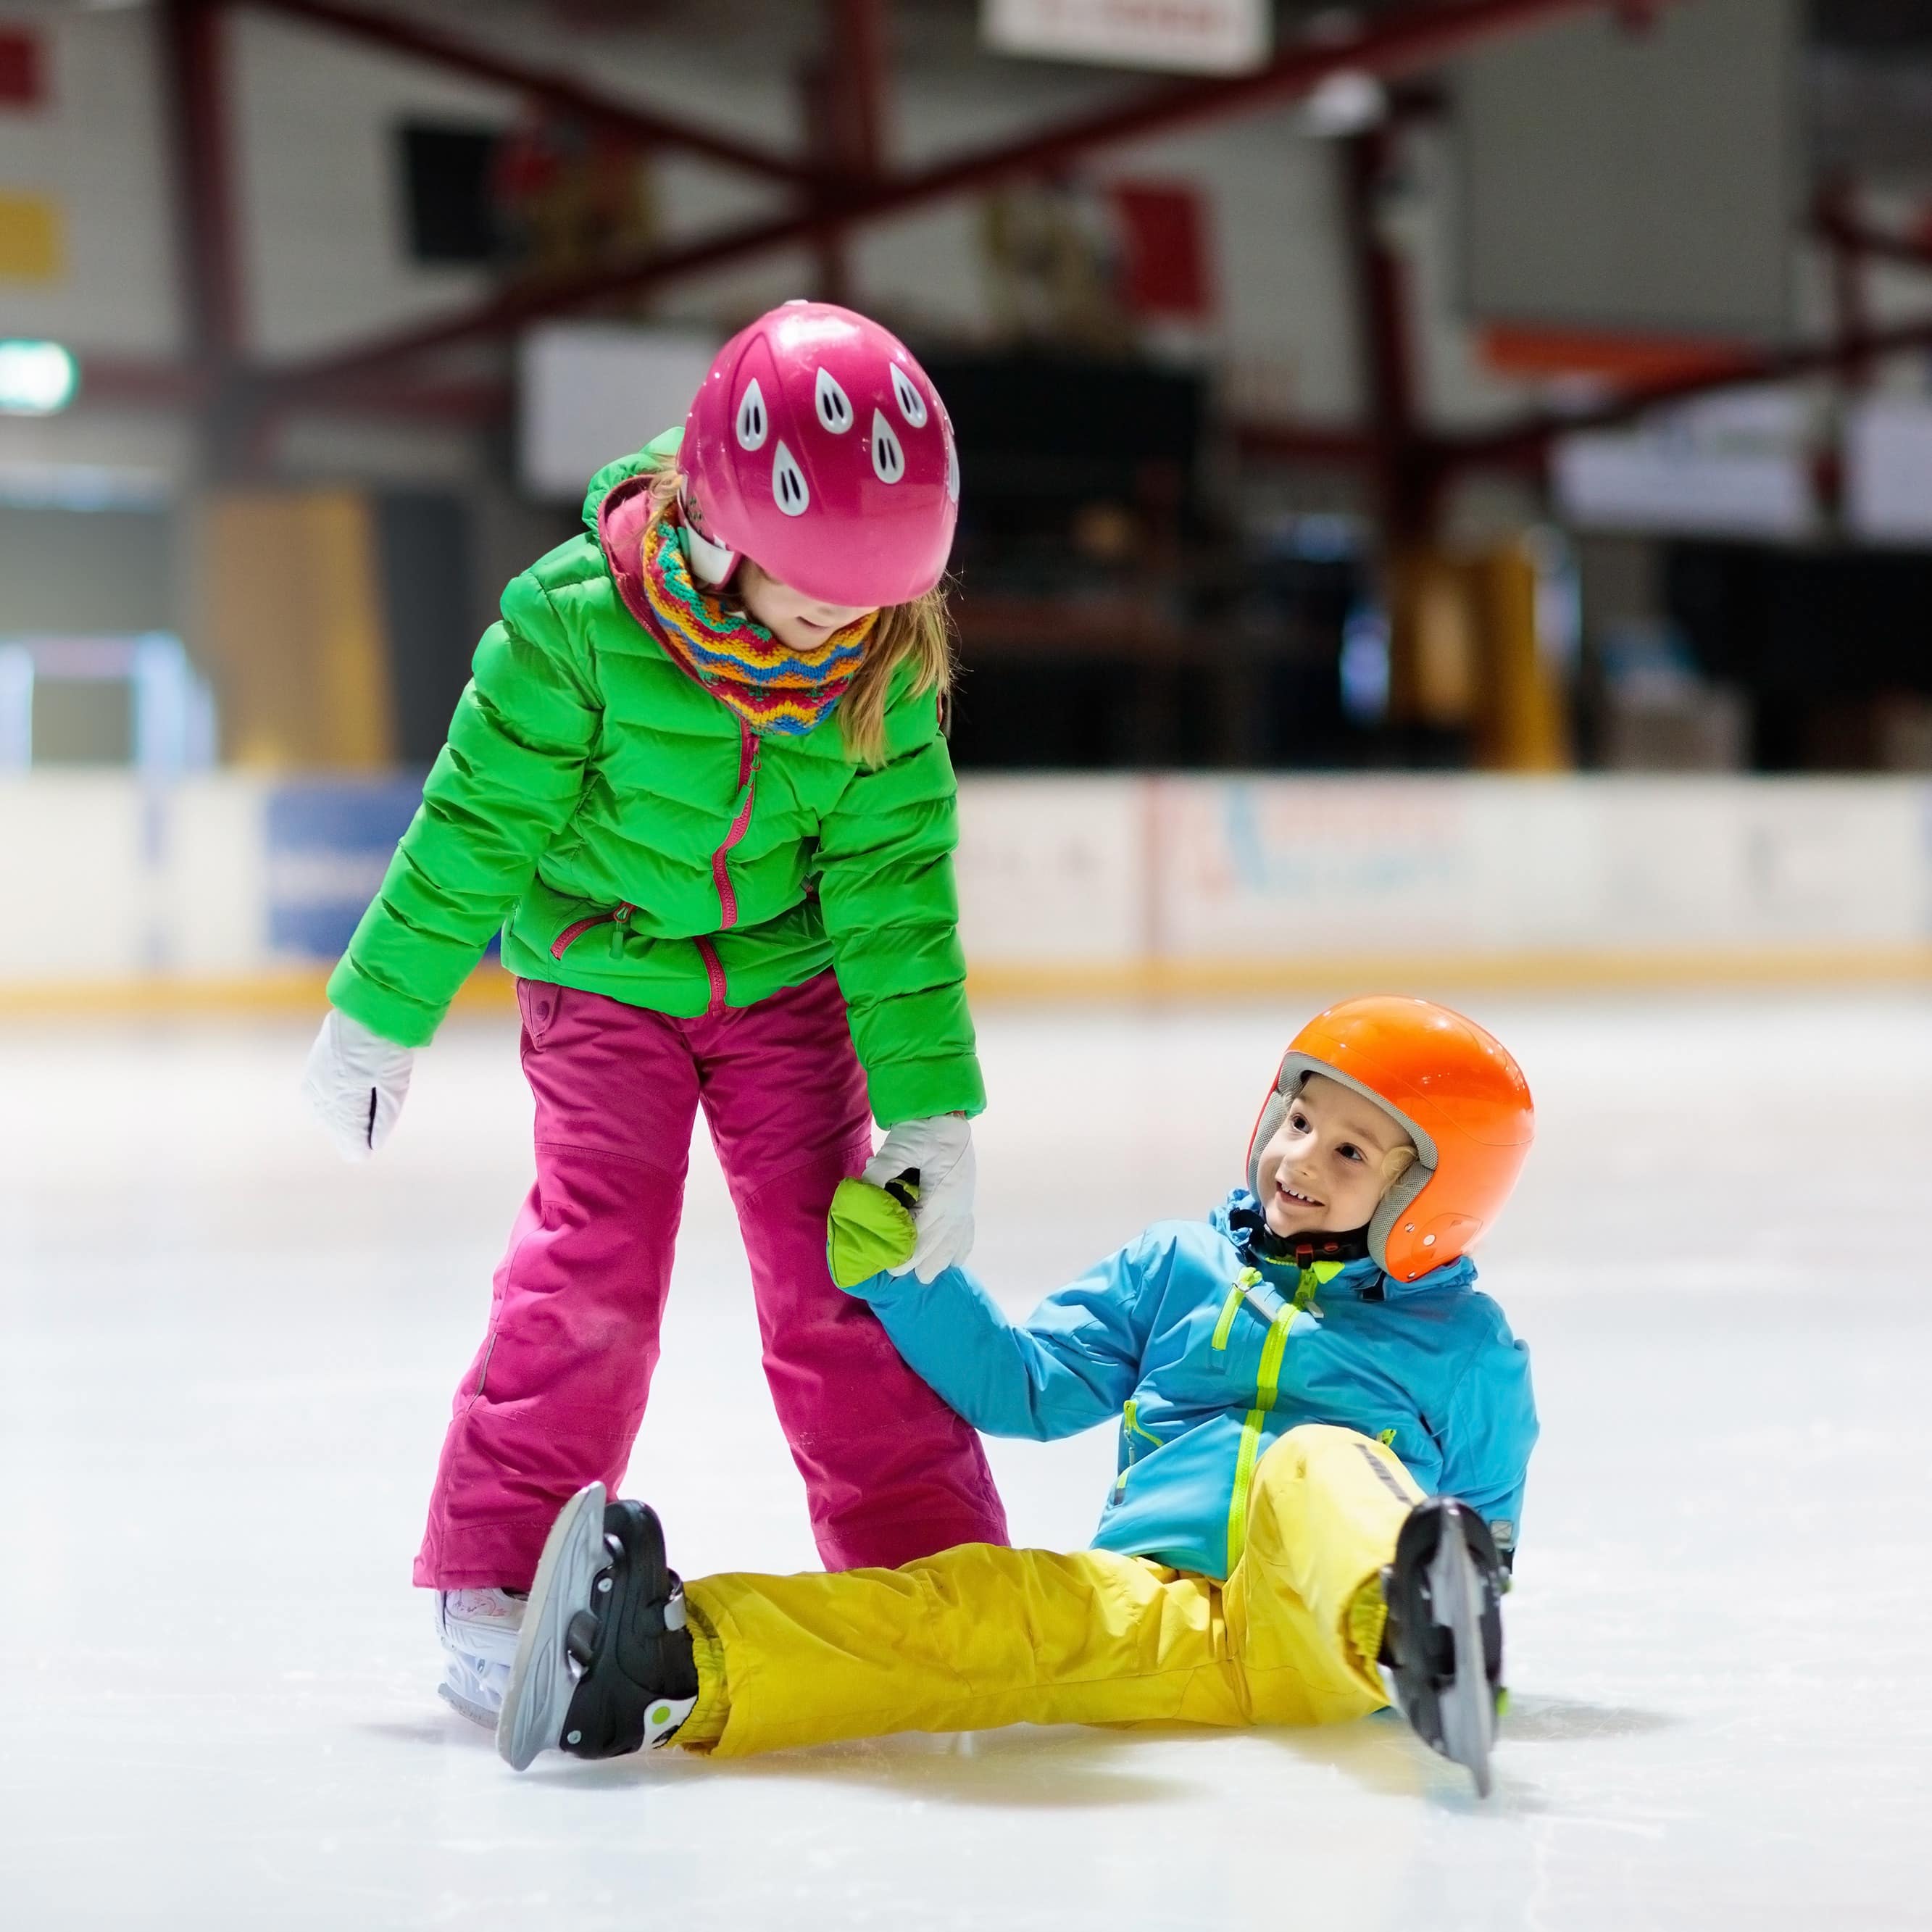 2 Kinder in bunter Winterkleidung beim Schlittschuhlaufen. Junge sitzt auf dem Boden, Mädchen hilft ihm auf.